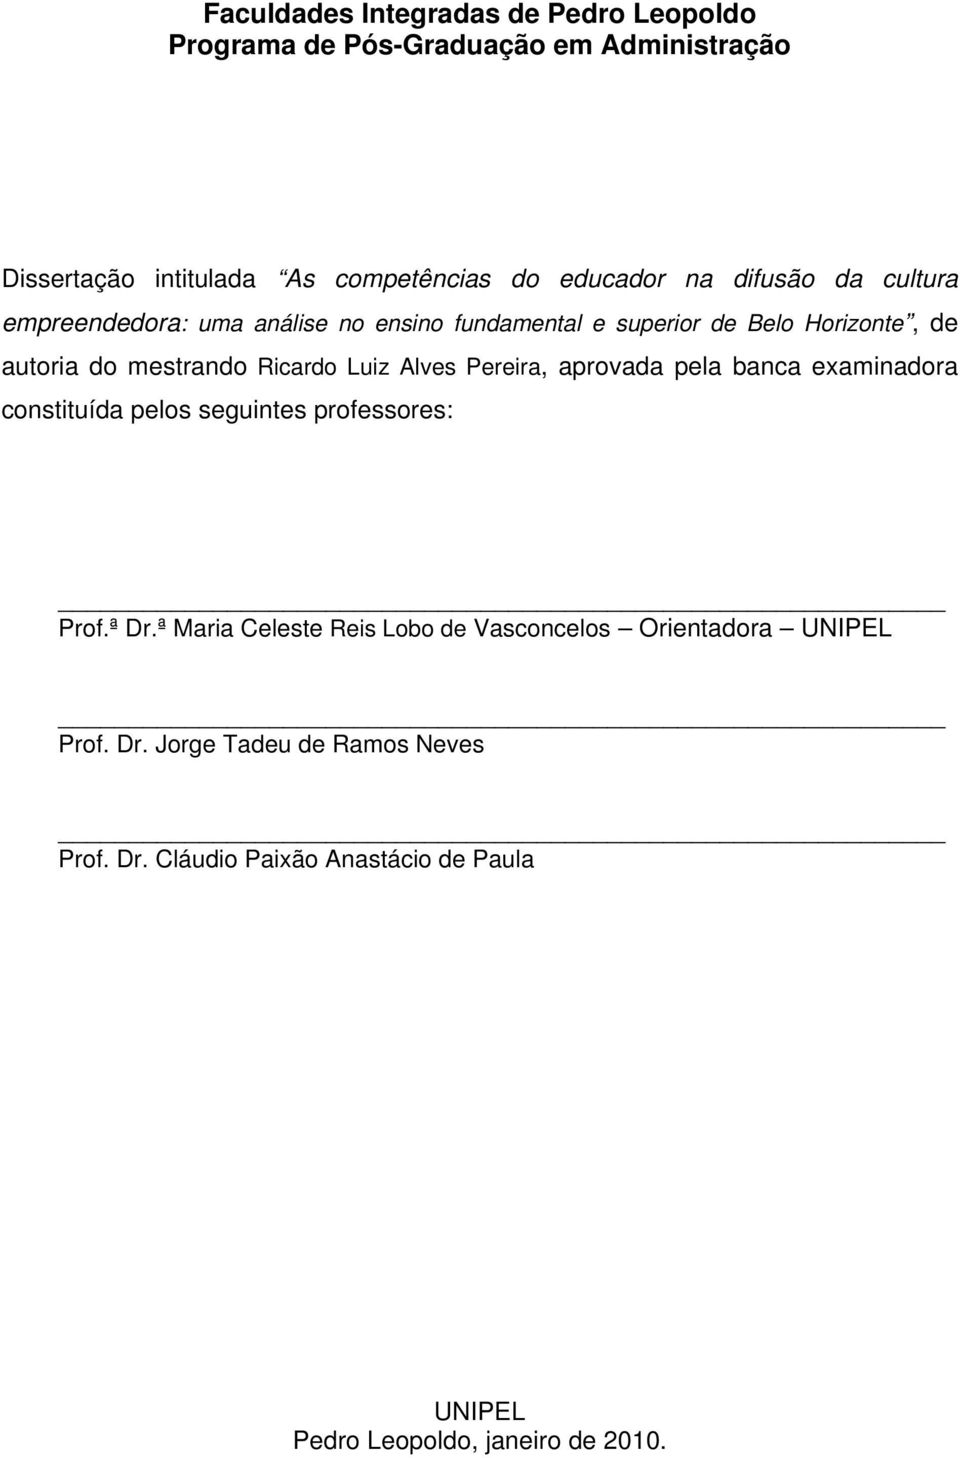 Alves Pereira, aprovada pela banca examinadora constituída pelos seguintes professores: Prof.ª Dr.